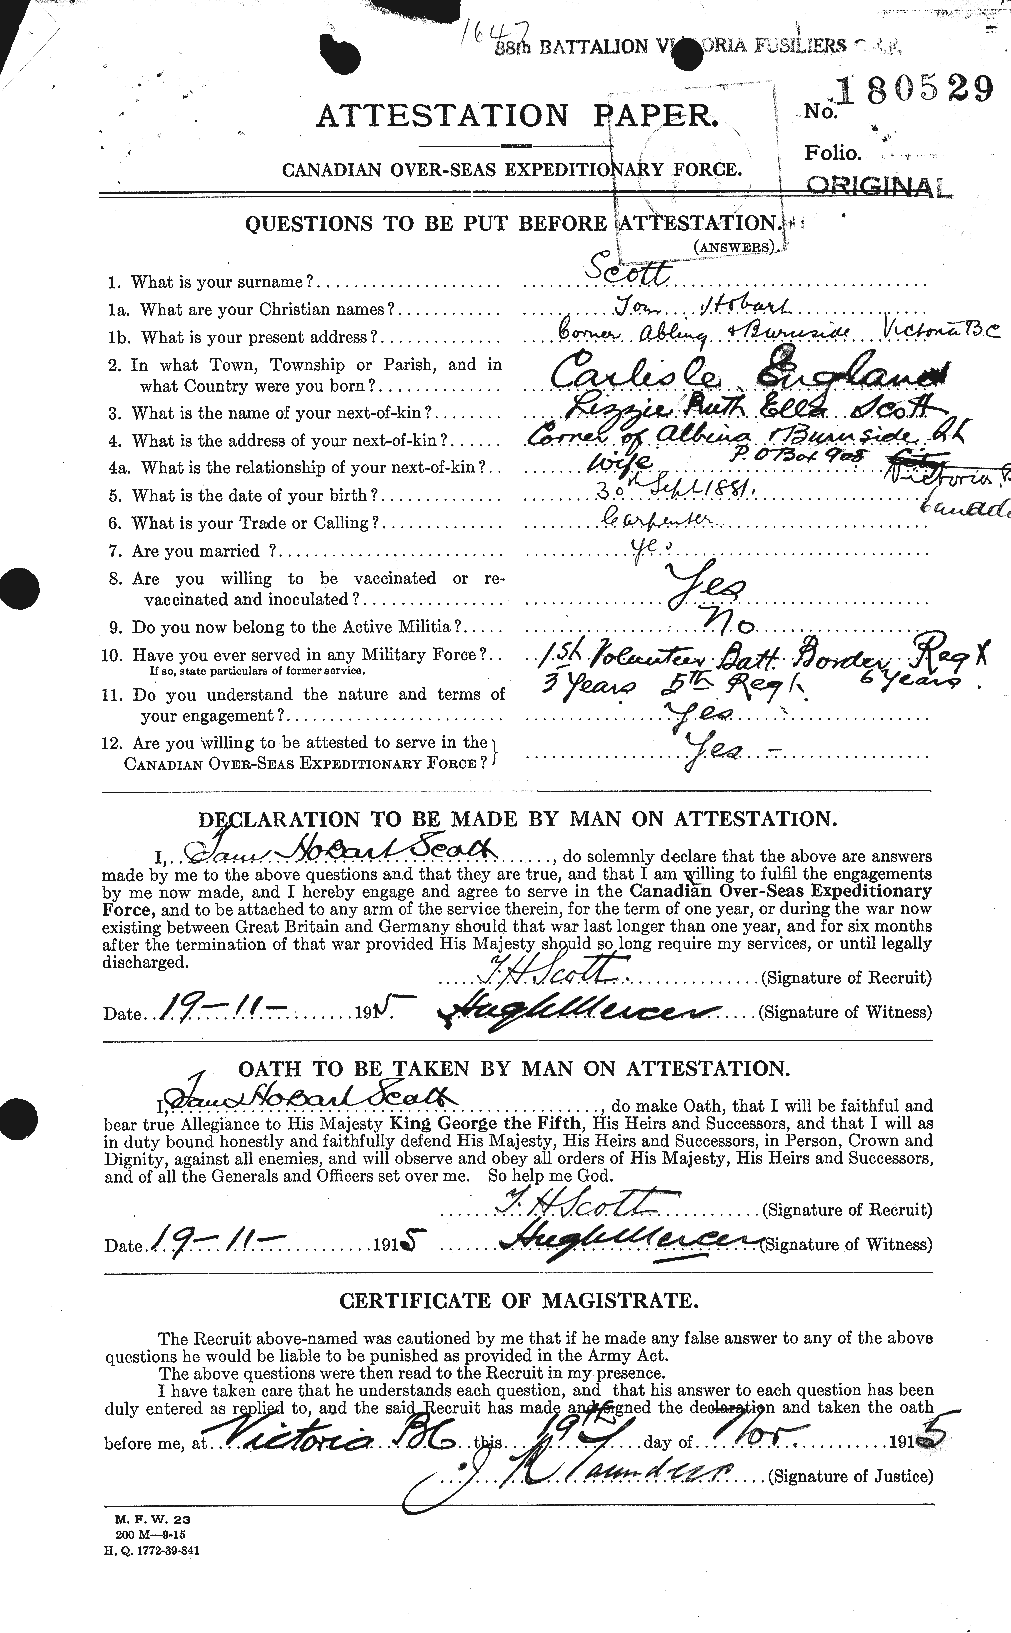 Dossiers du Personnel de la Première Guerre mondiale - CEC 088208a